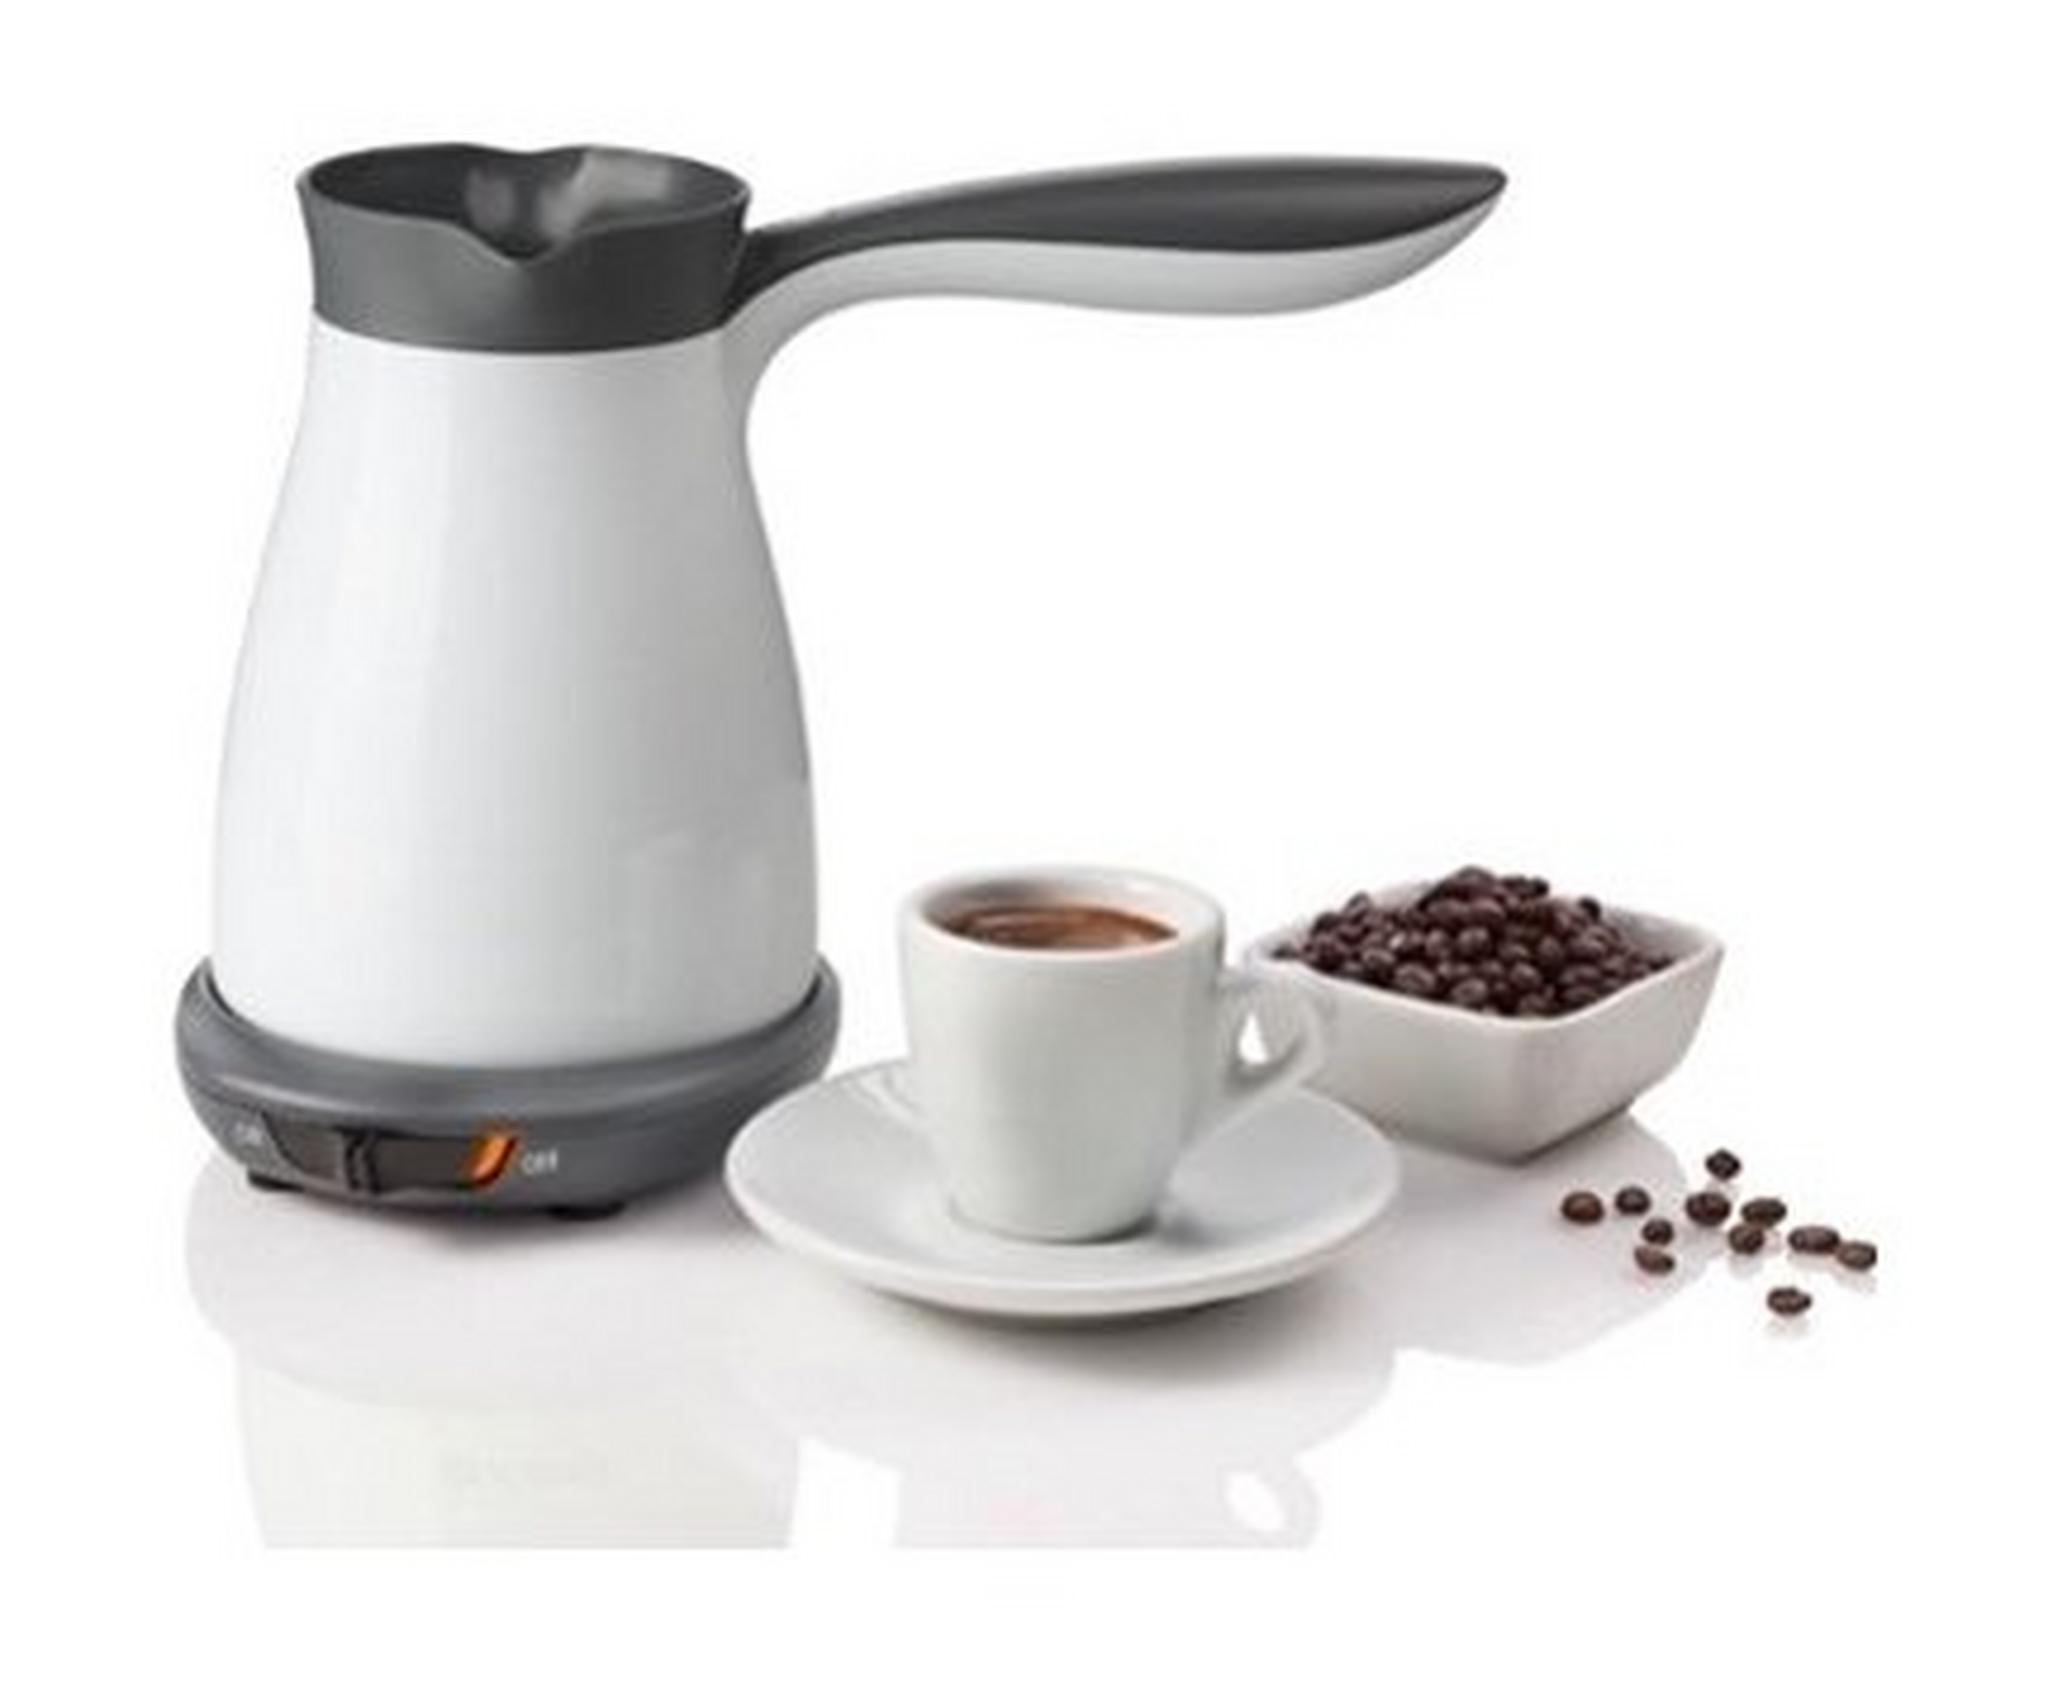 ماكينة تحضير القهوة التركية من ونسا، 550 واط، 0.33 لتر، TCM-2020 - أبيض